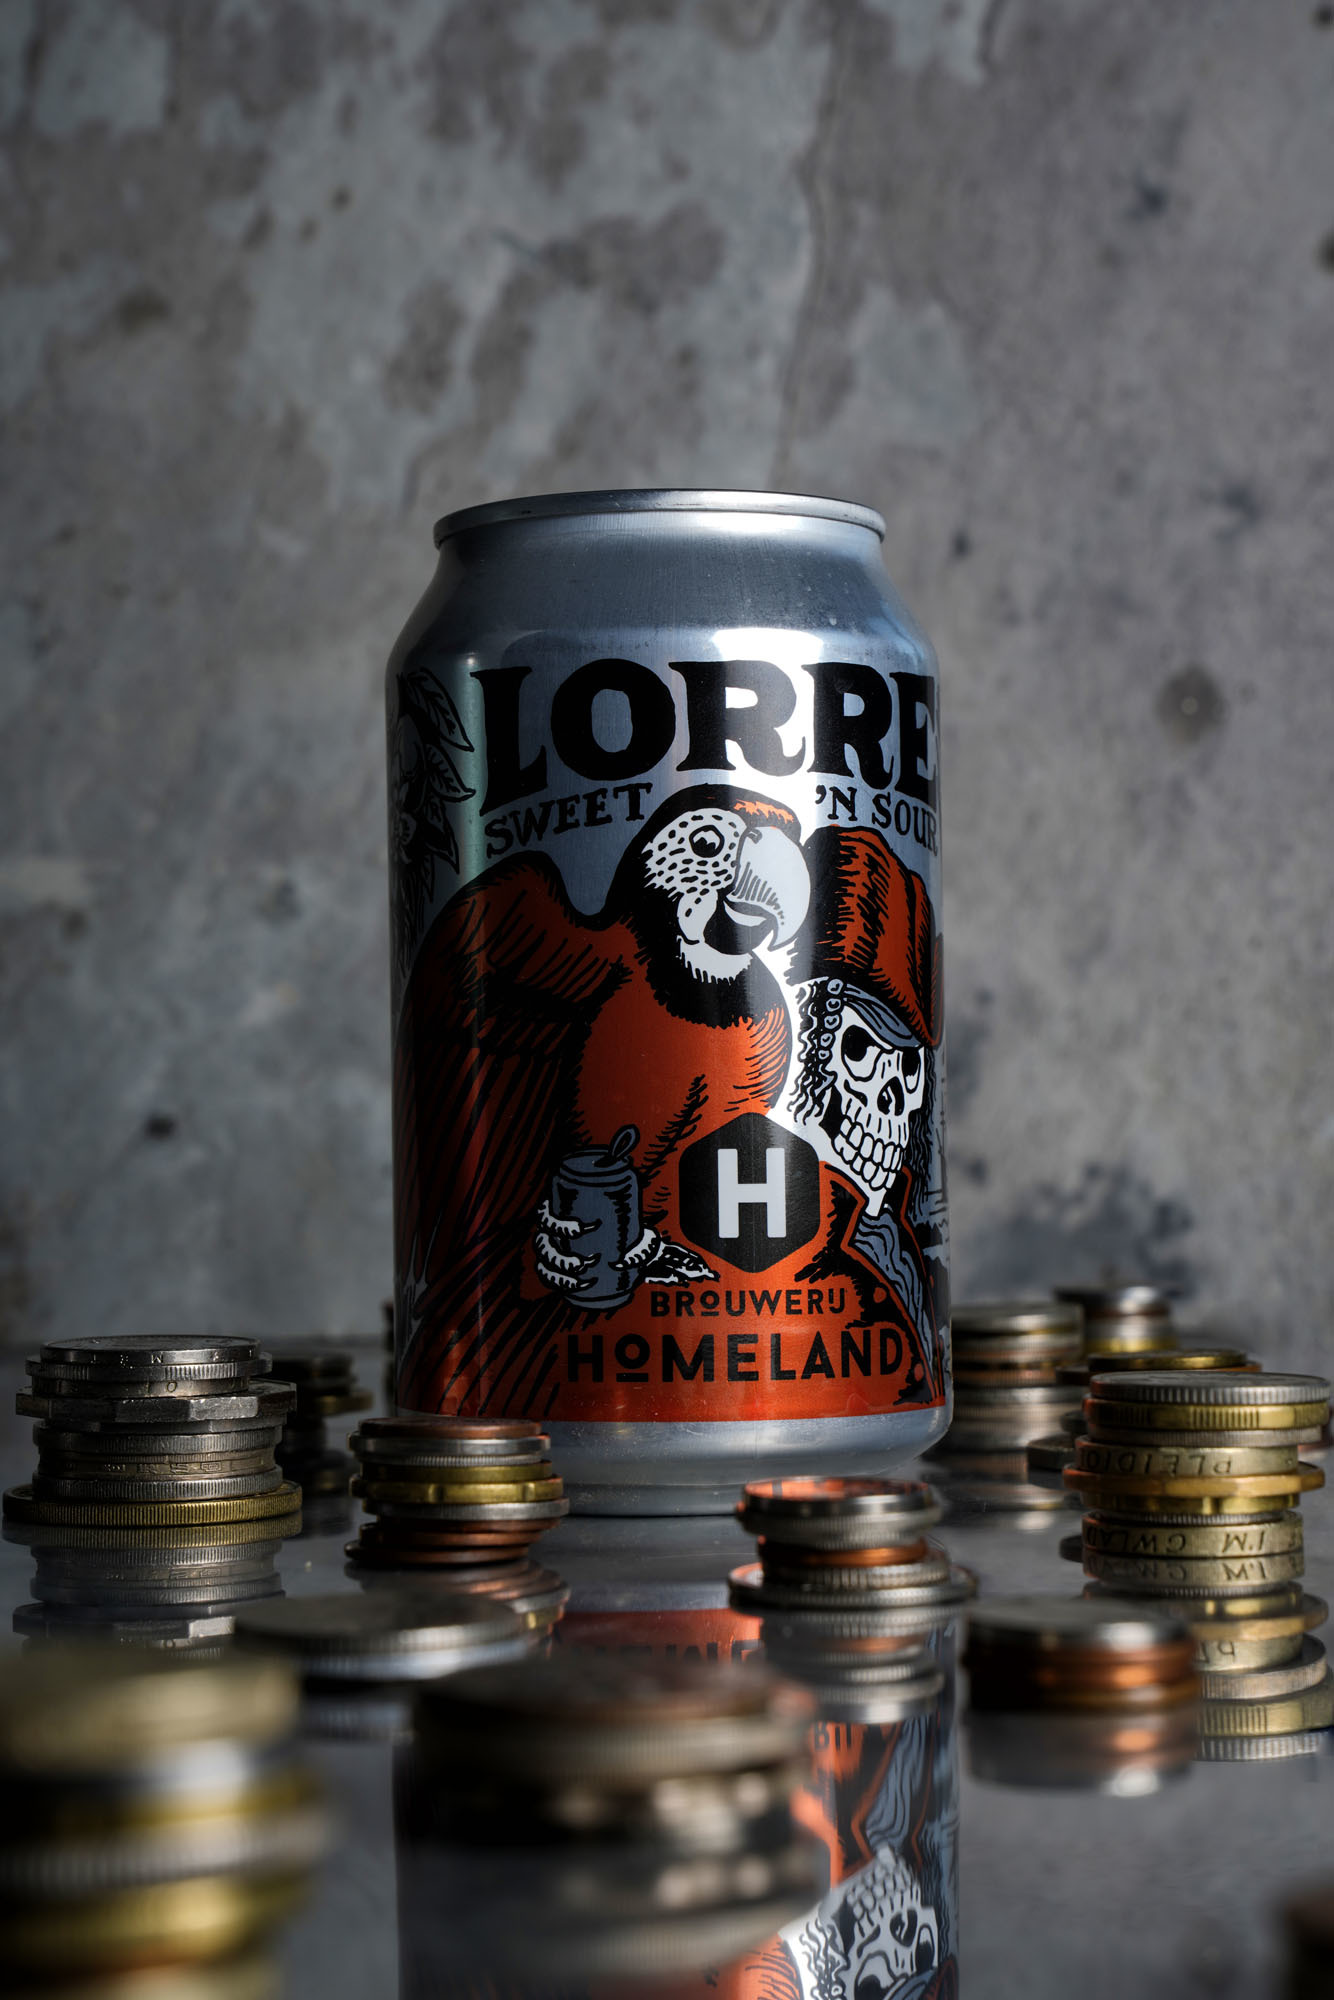 Lorre van Homeland Brewery Amsterdam